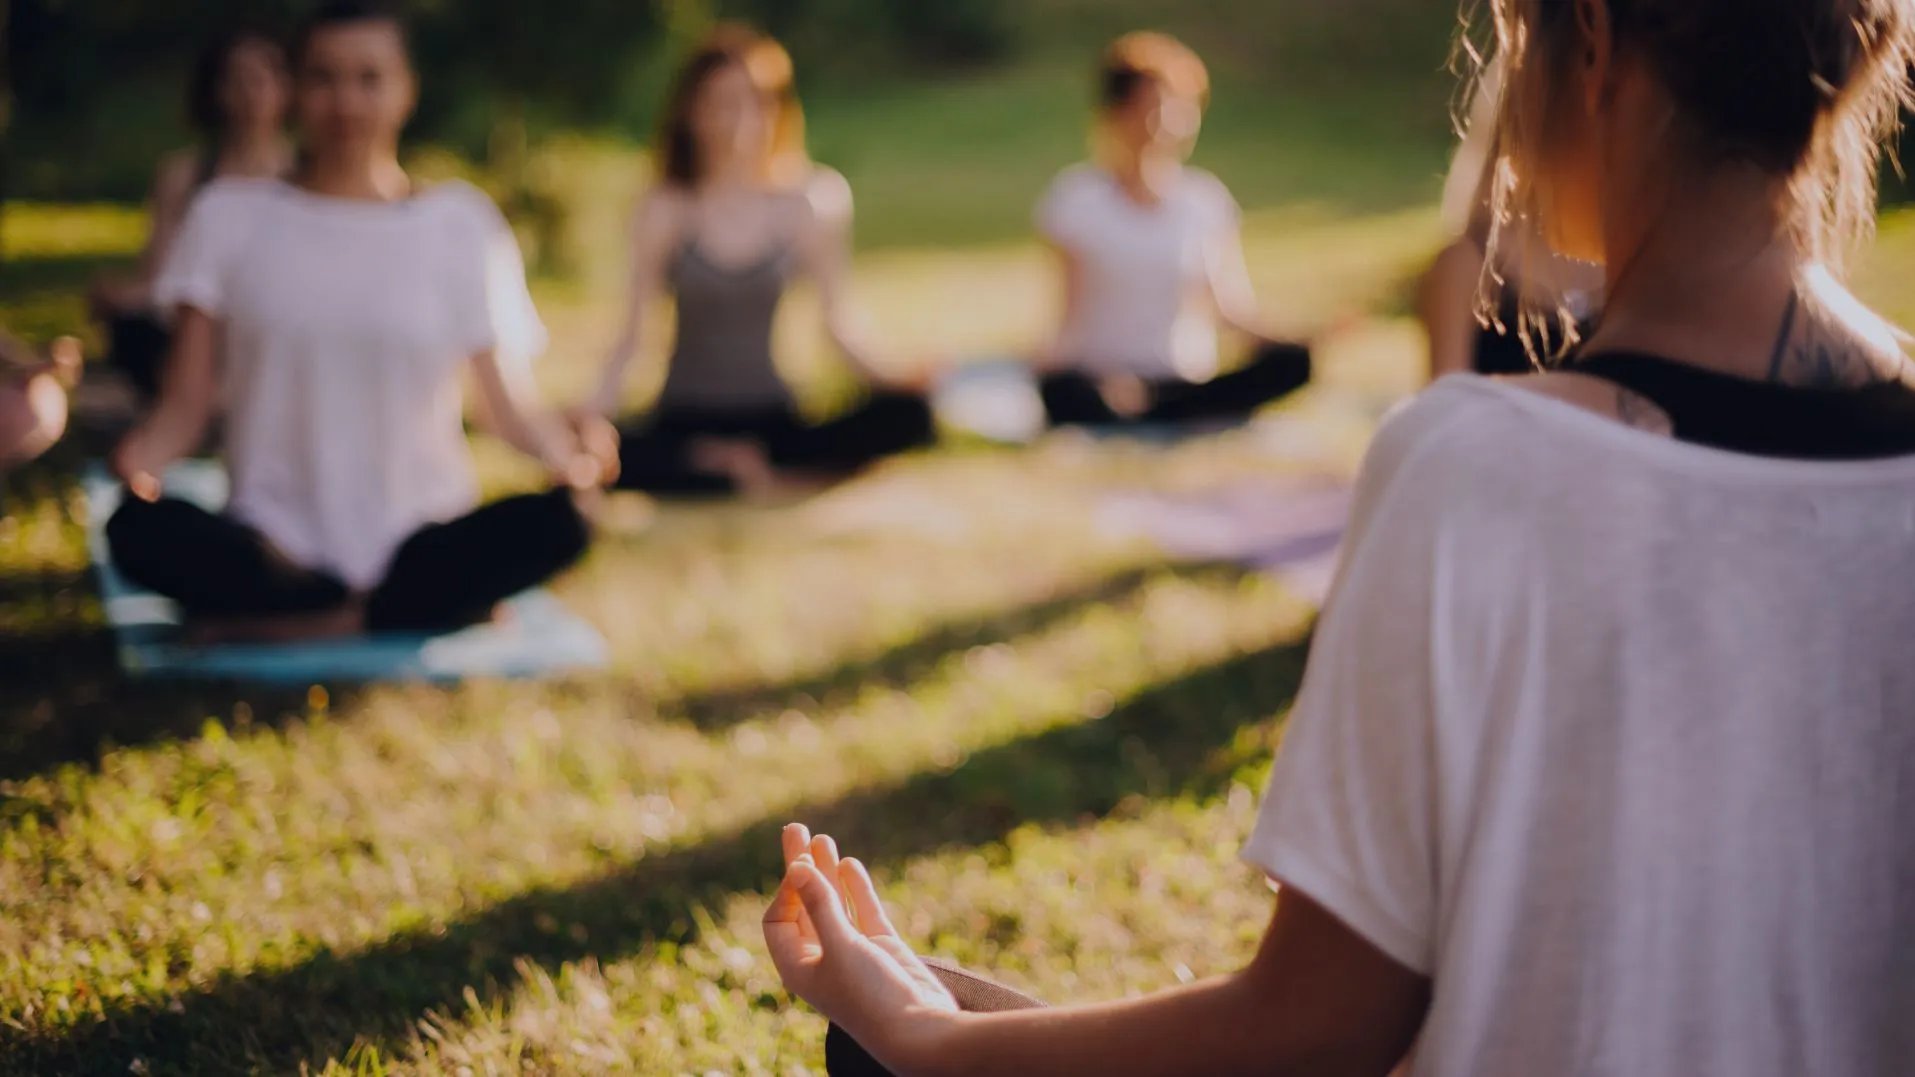 Yoga-Kurs im Grünen mit Yoga-Matten auf der Wiese